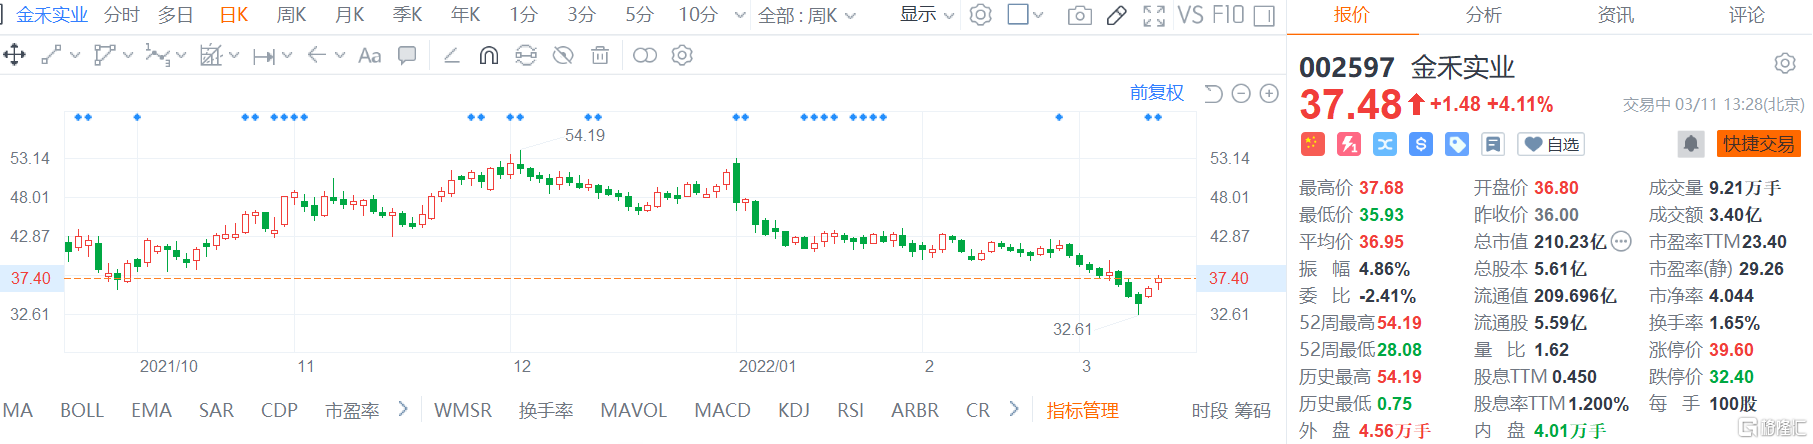 金禾实业(002597.SZ)股价继续回升 现报37.48元涨幅4.1%